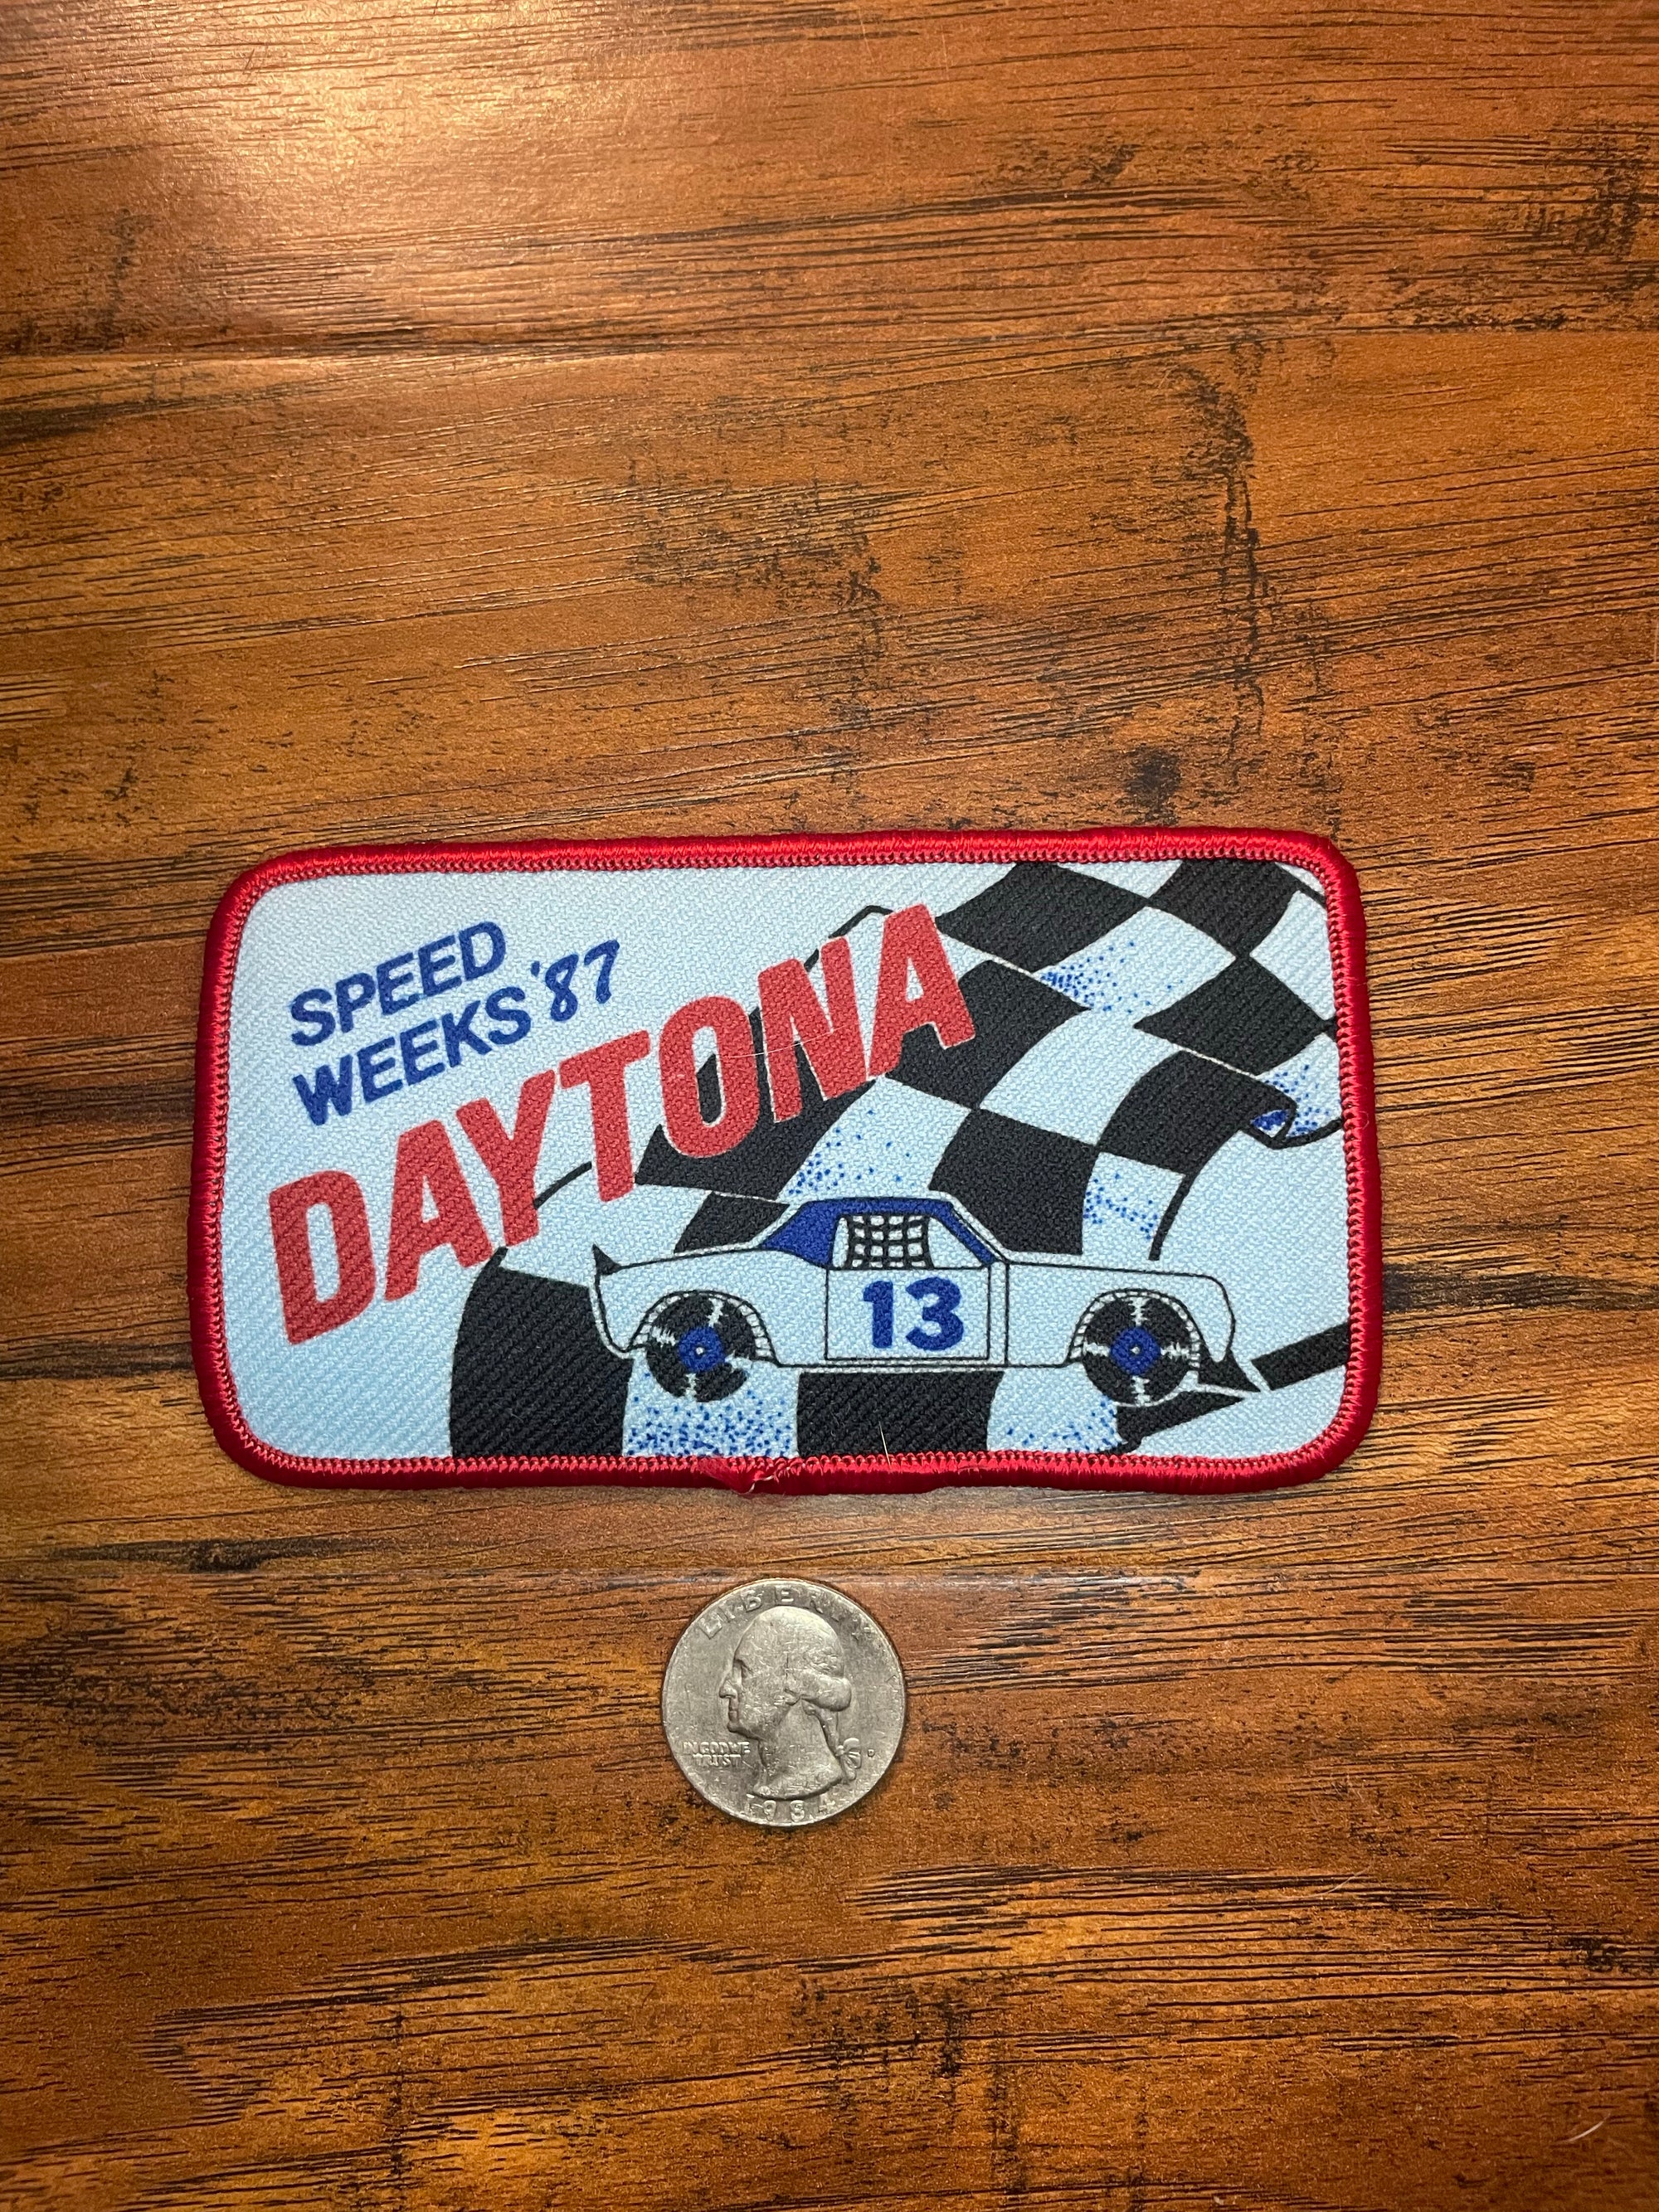 Vintage Speed Weeks ‘87 Daytona